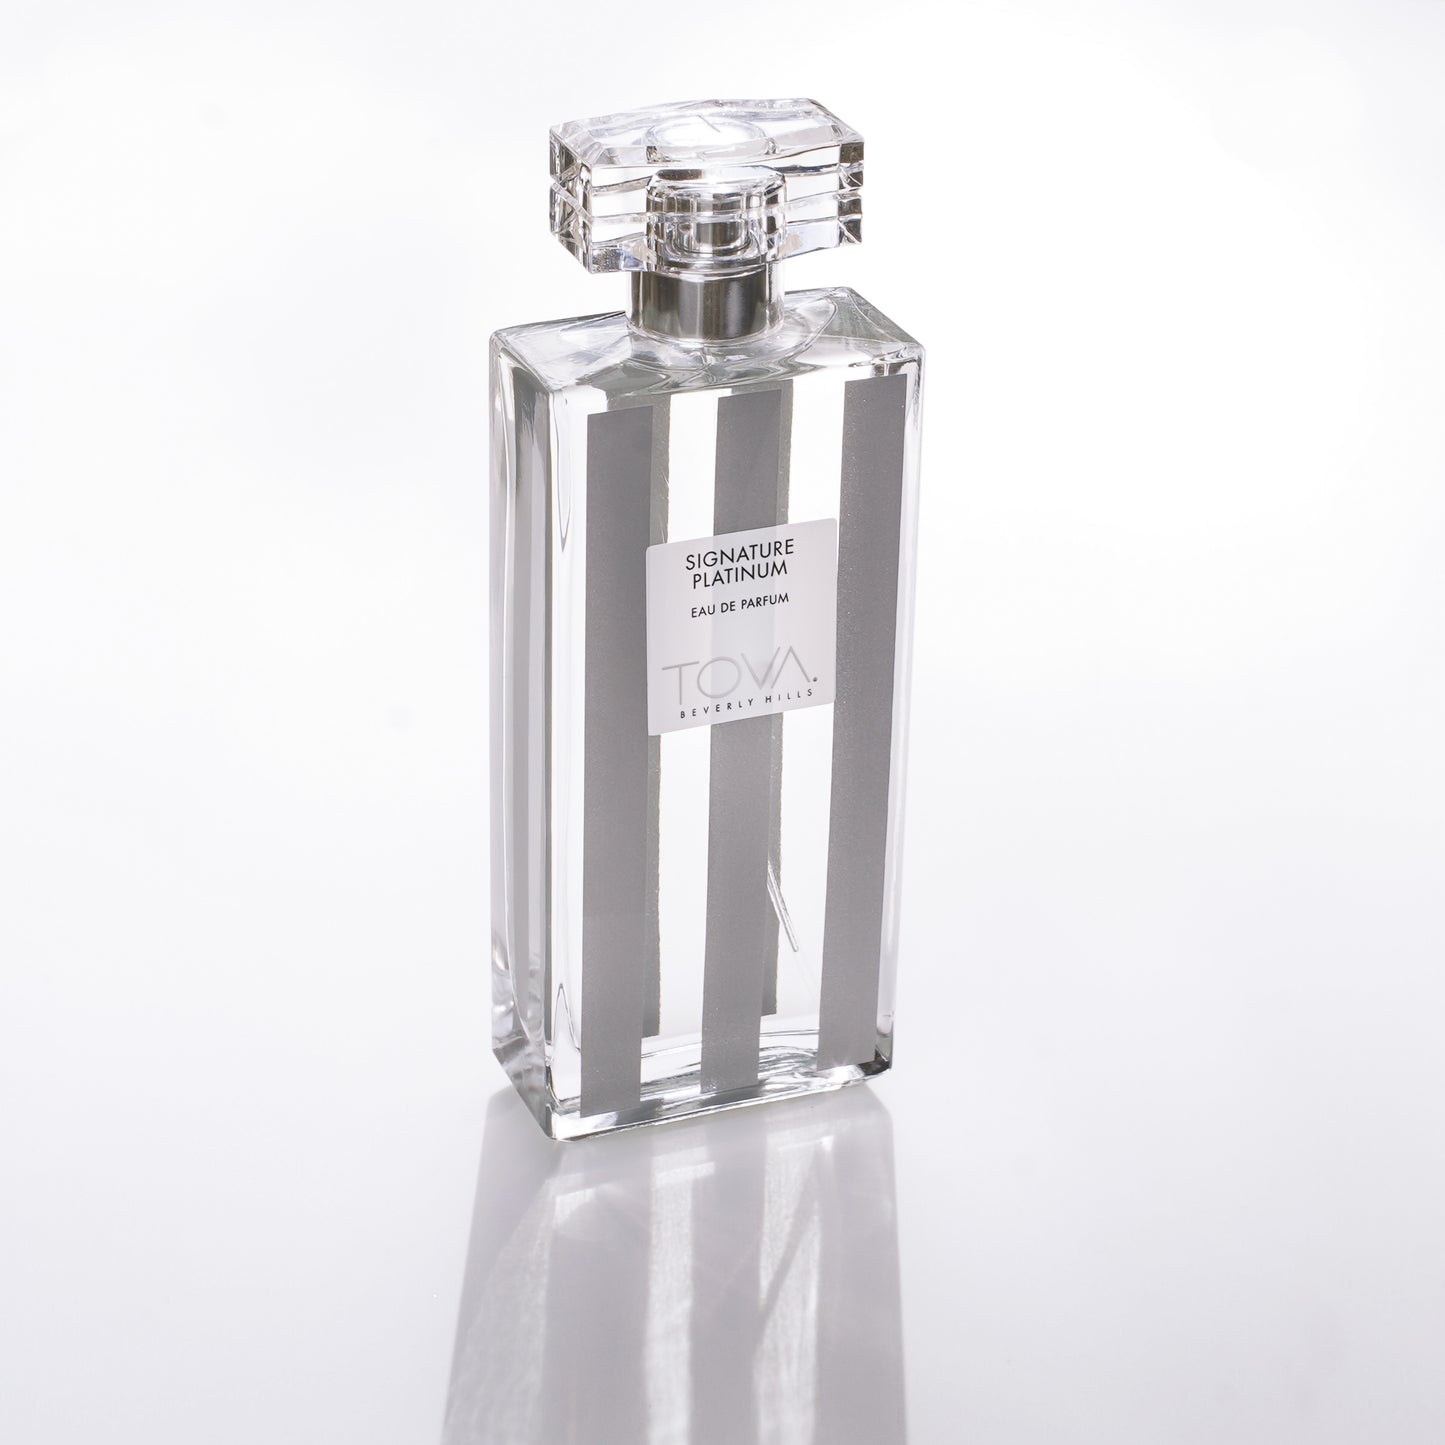 Signature Platinum Limited Edition Eau de Parfum 3.4 fl oz